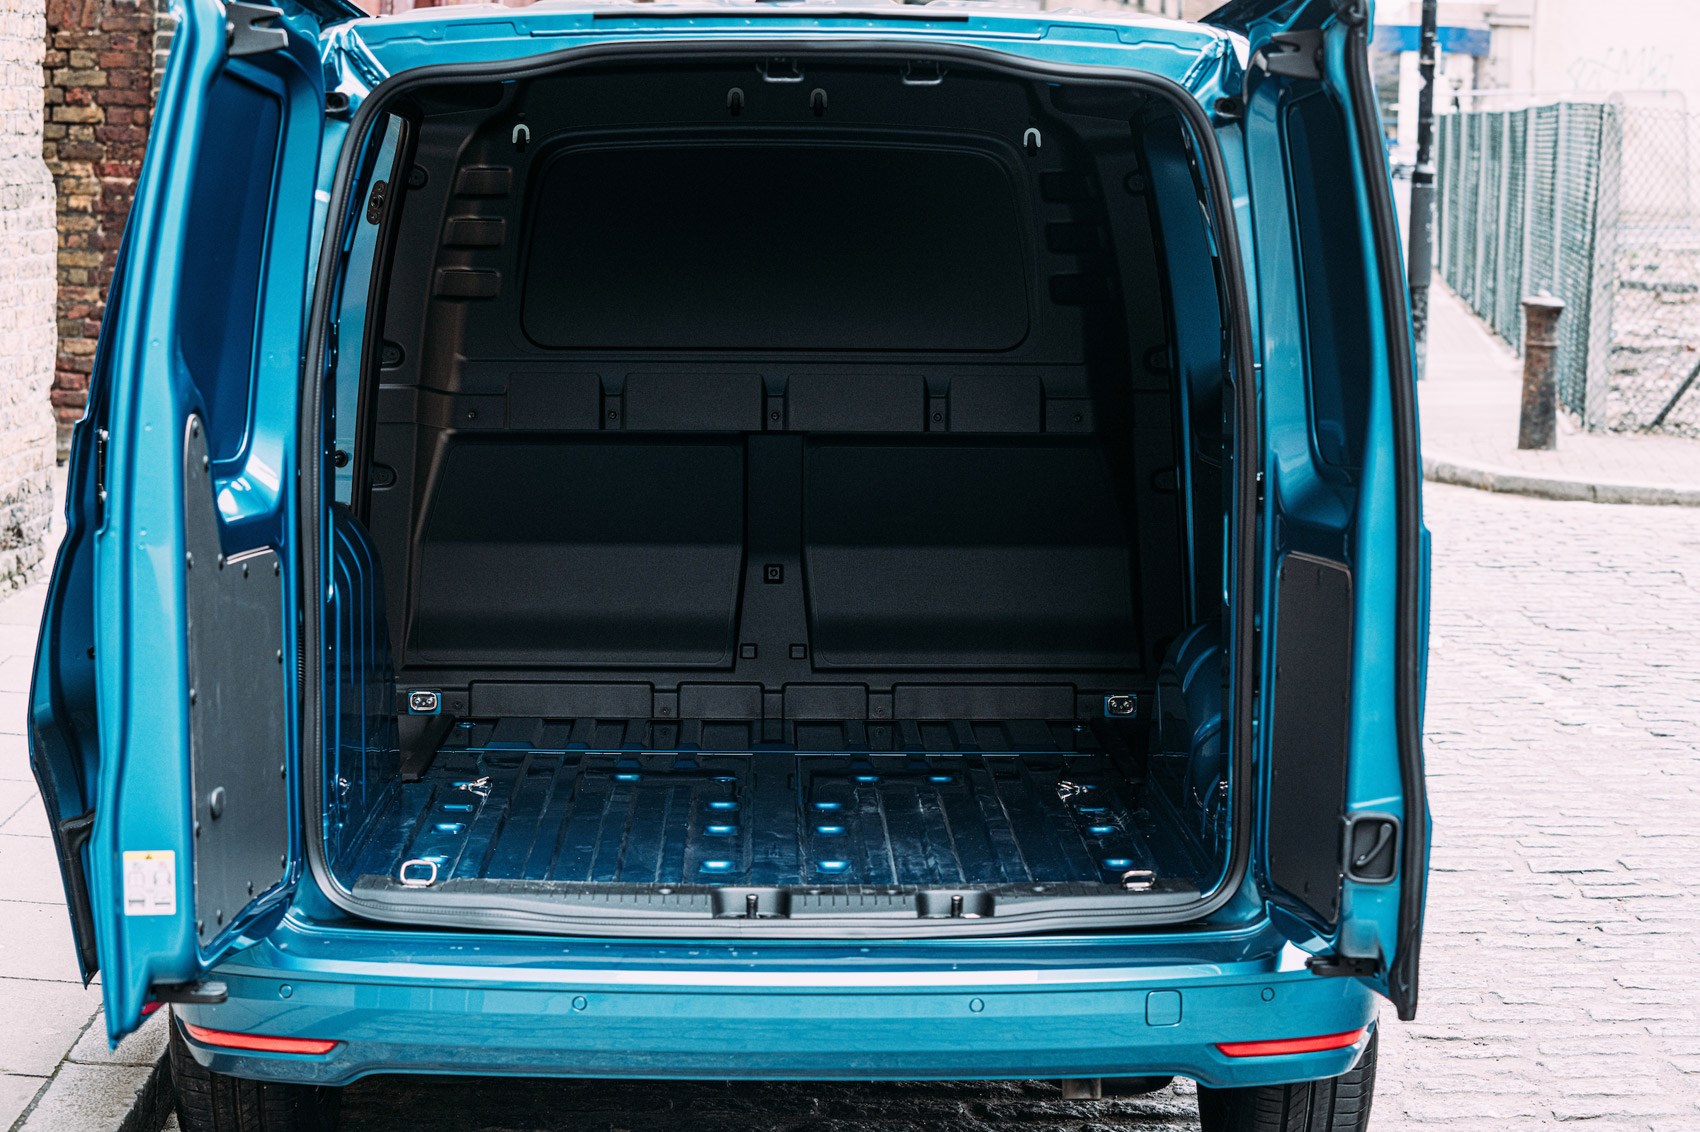 VW Caddy Cargo load area dimensions - SWB, 2021